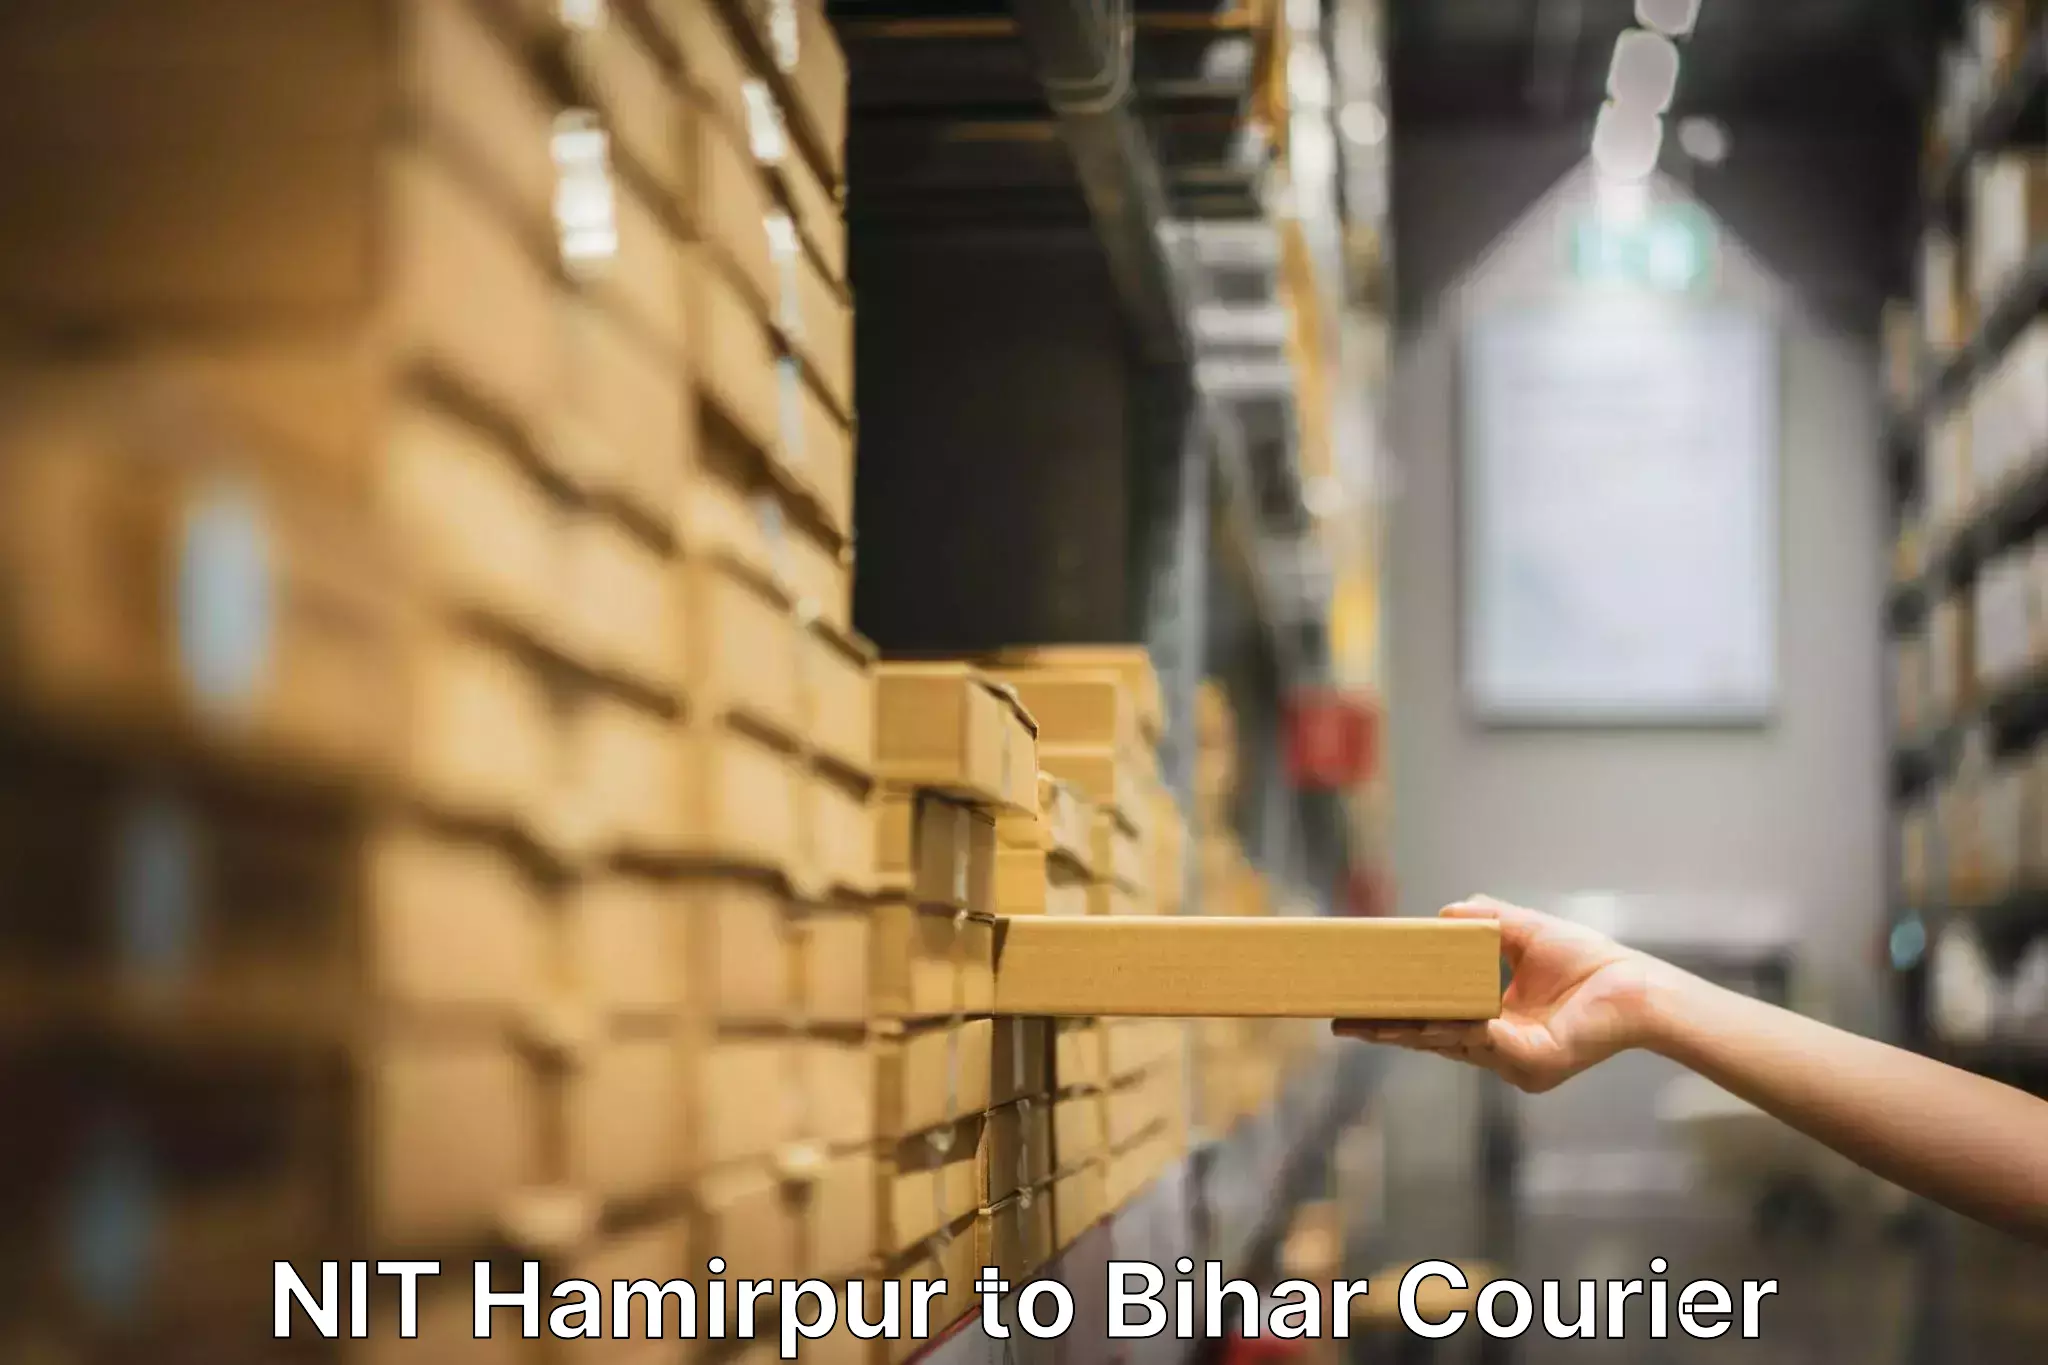 Door-to-door relocation services NIT Hamirpur to Bihar